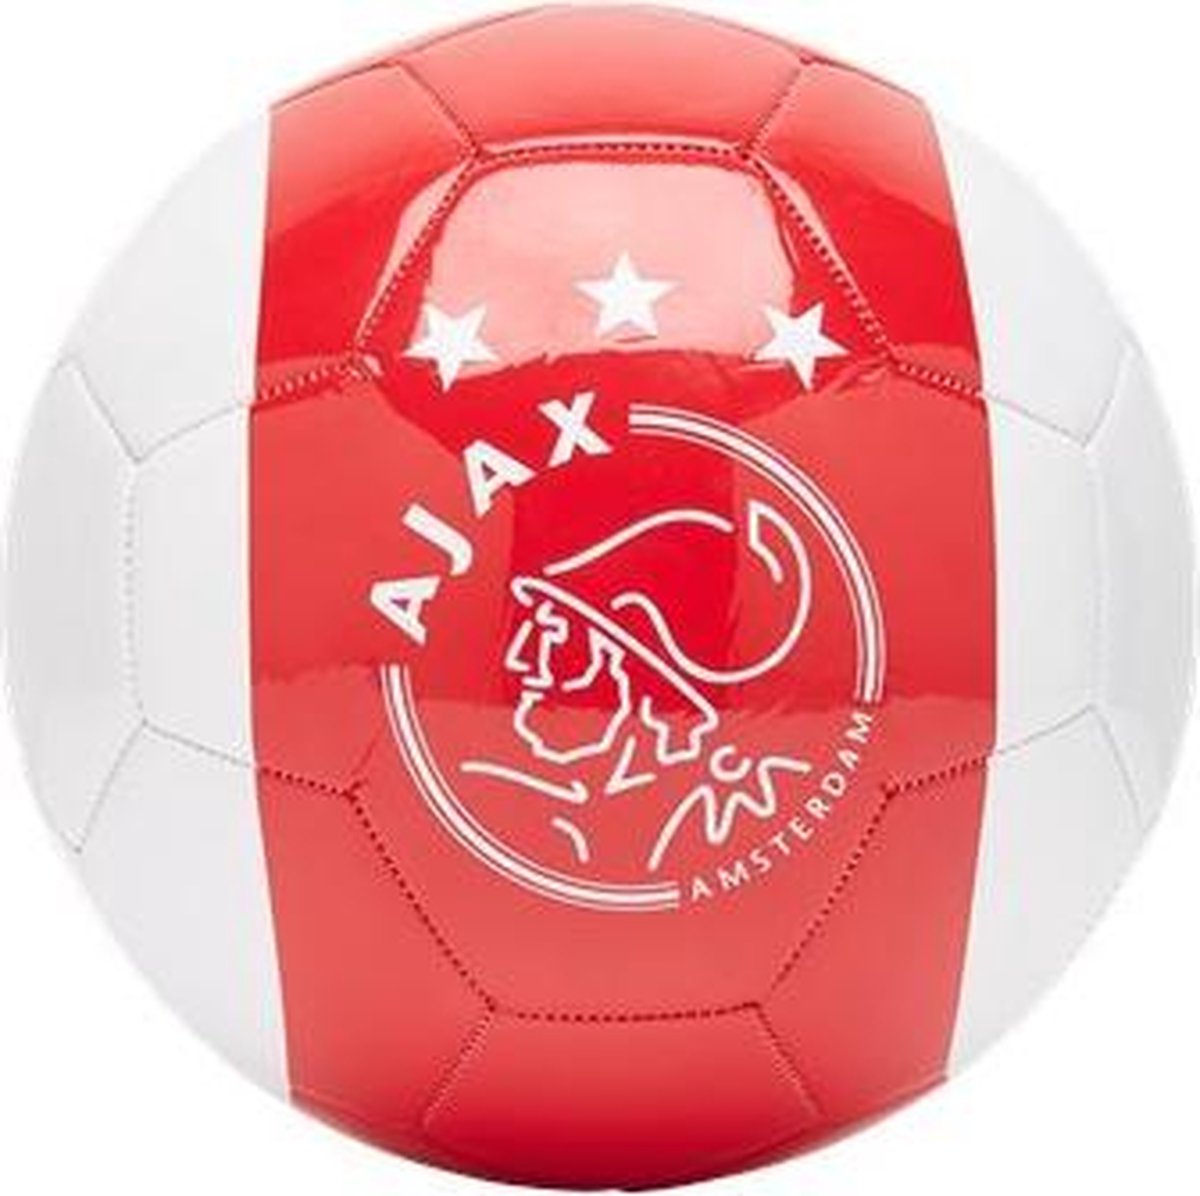 Ajax-minibal wit-rood-wit